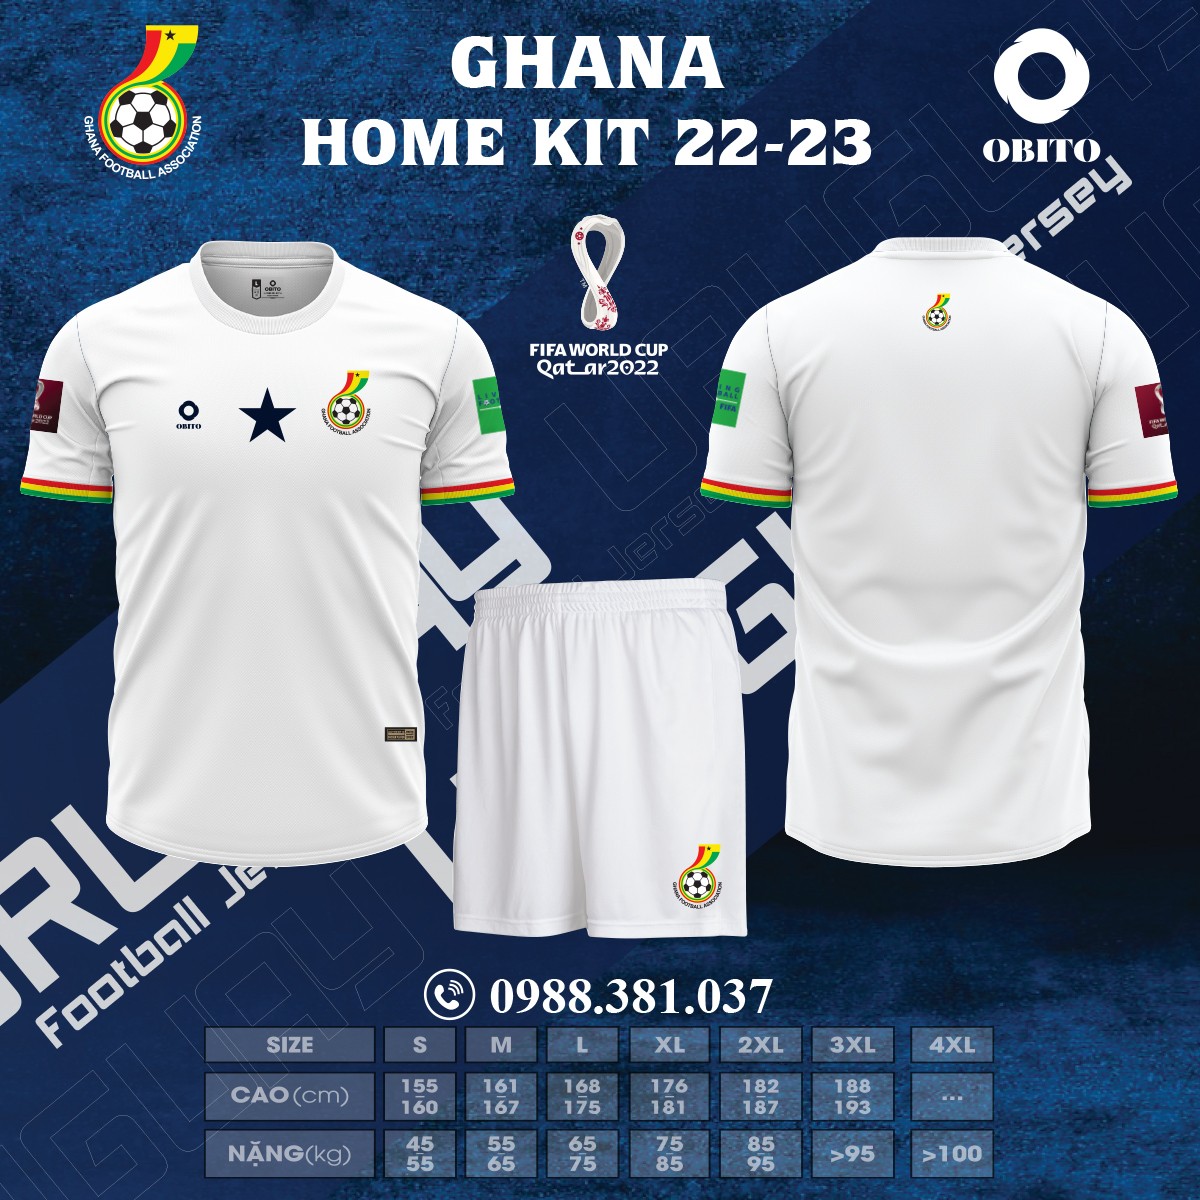 Áo Đội Tuyển Ghana Sân Nhà World Cup 2022 Giá Rẻ Shop Obito Sport